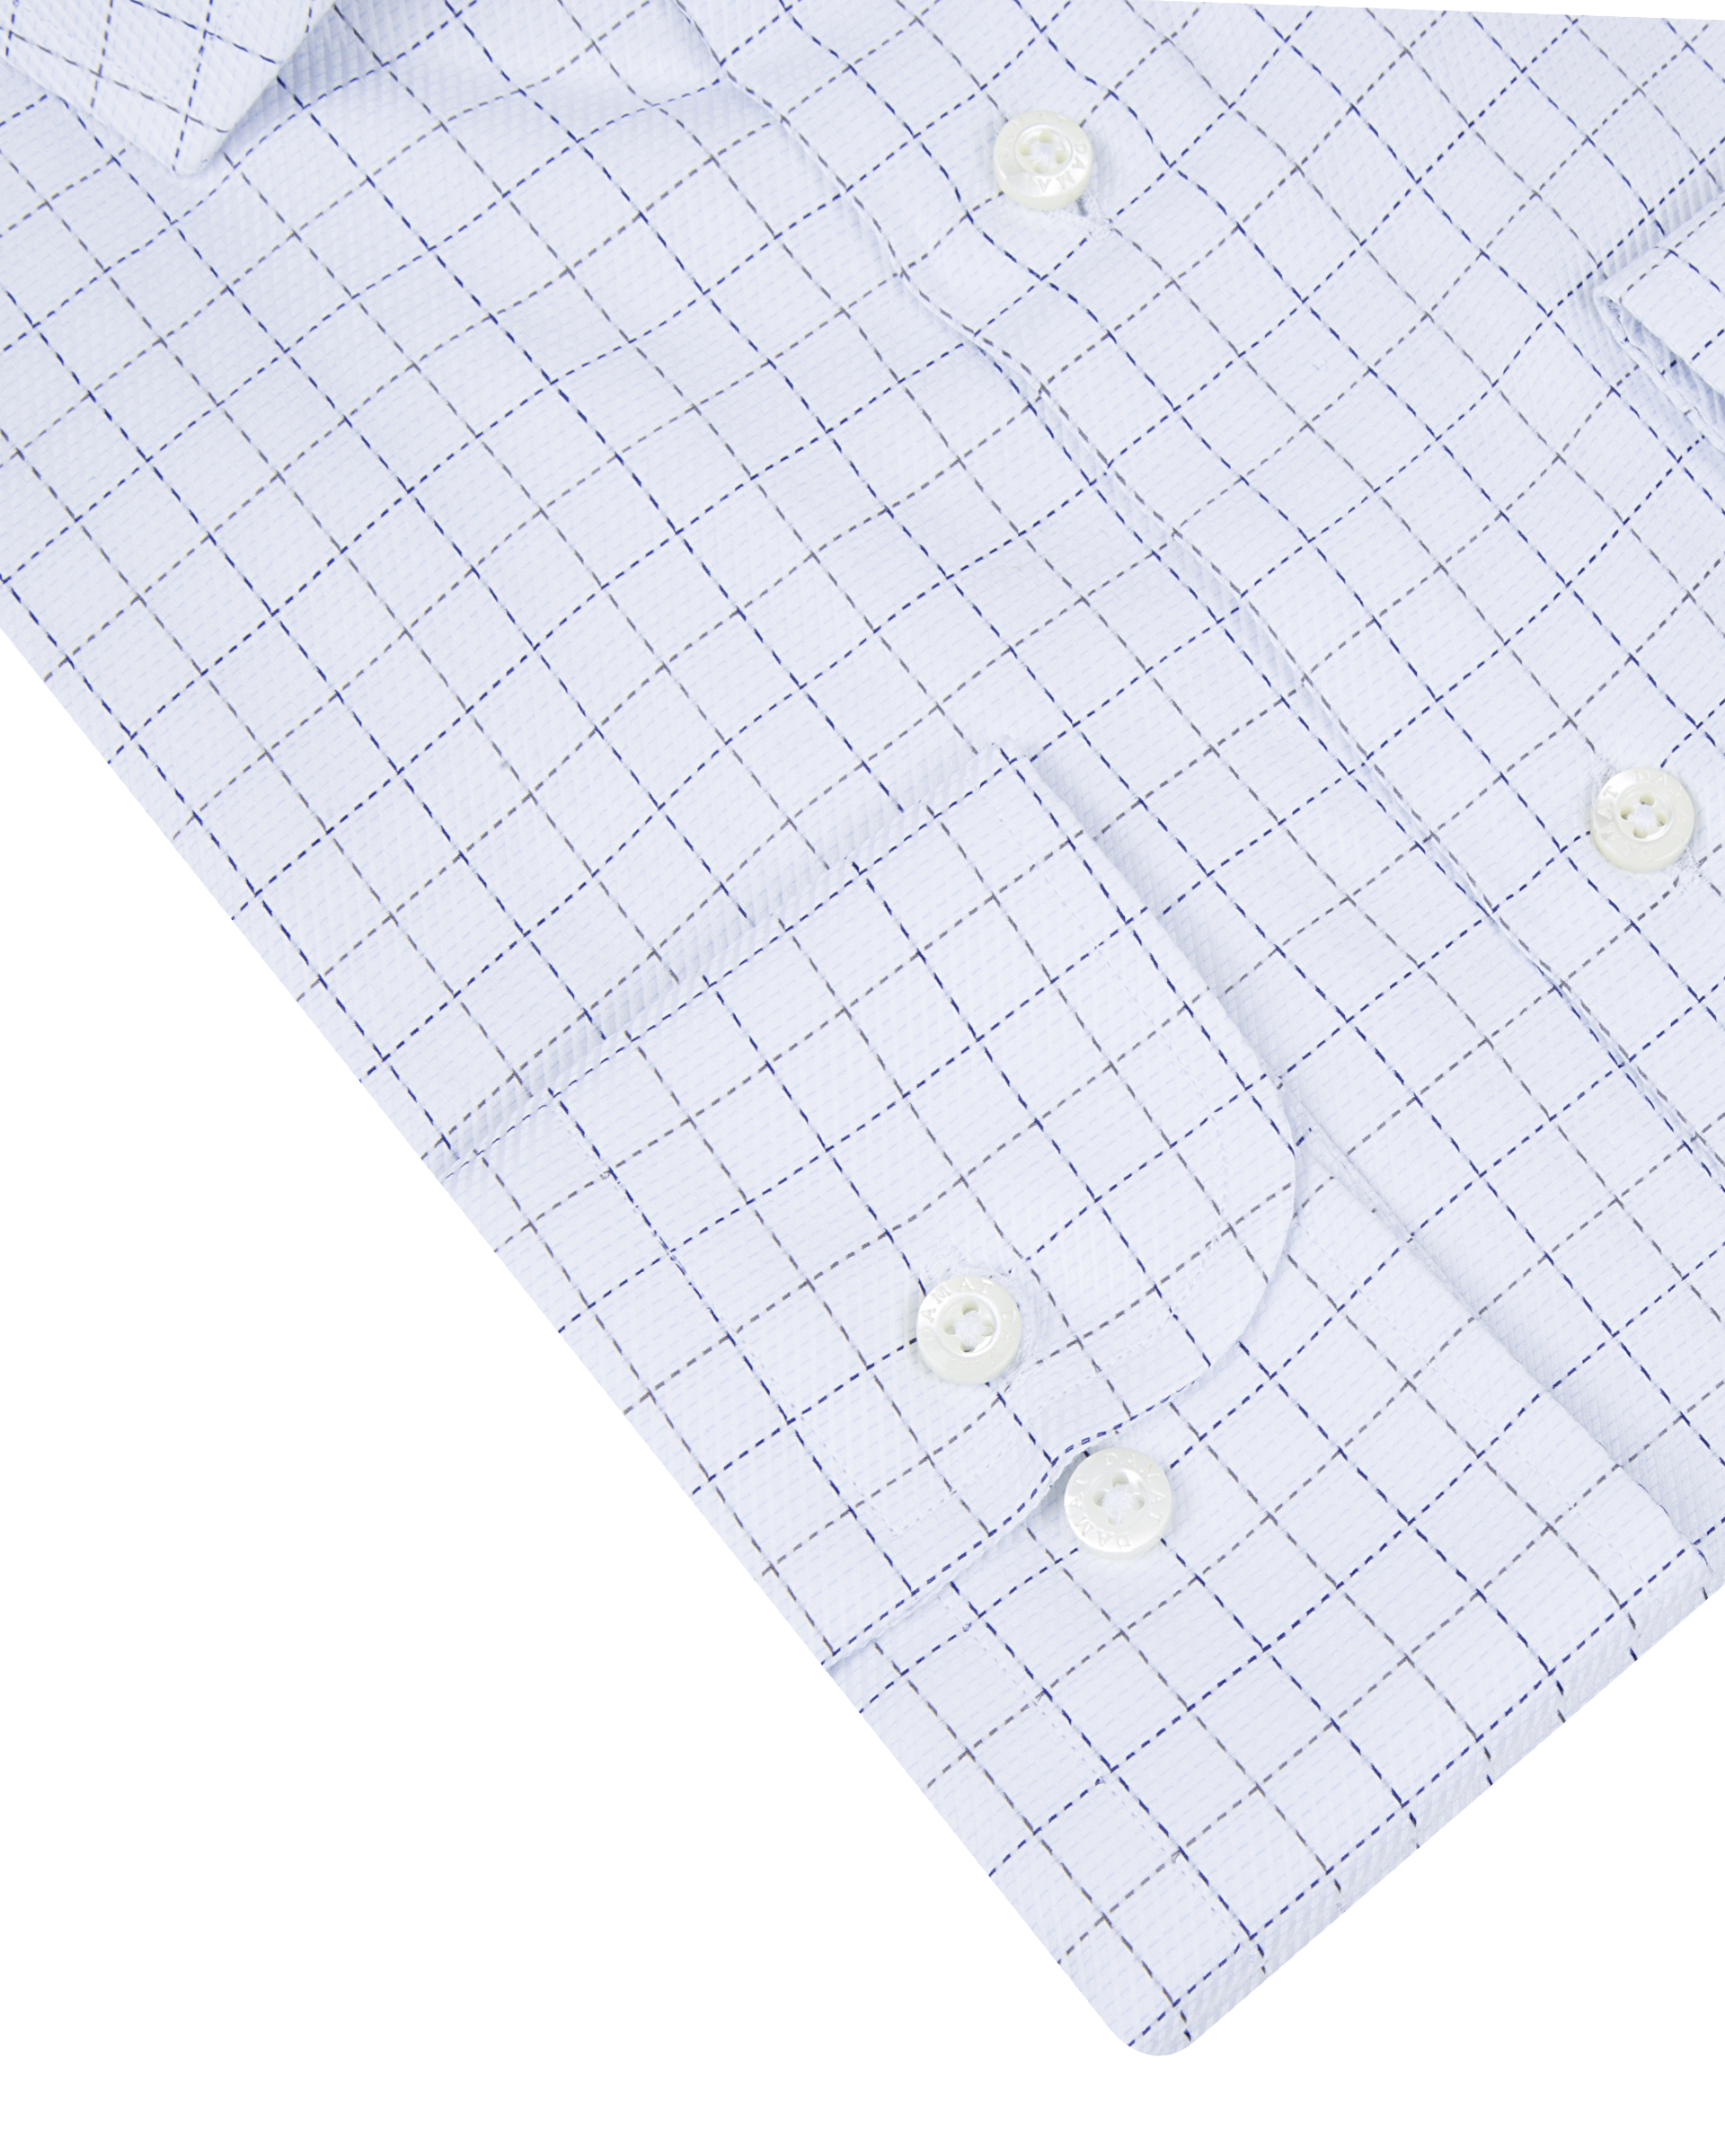 Damat Tween Damat Slim Fit Beyaz Kareli Easy Care Gömlek. 4